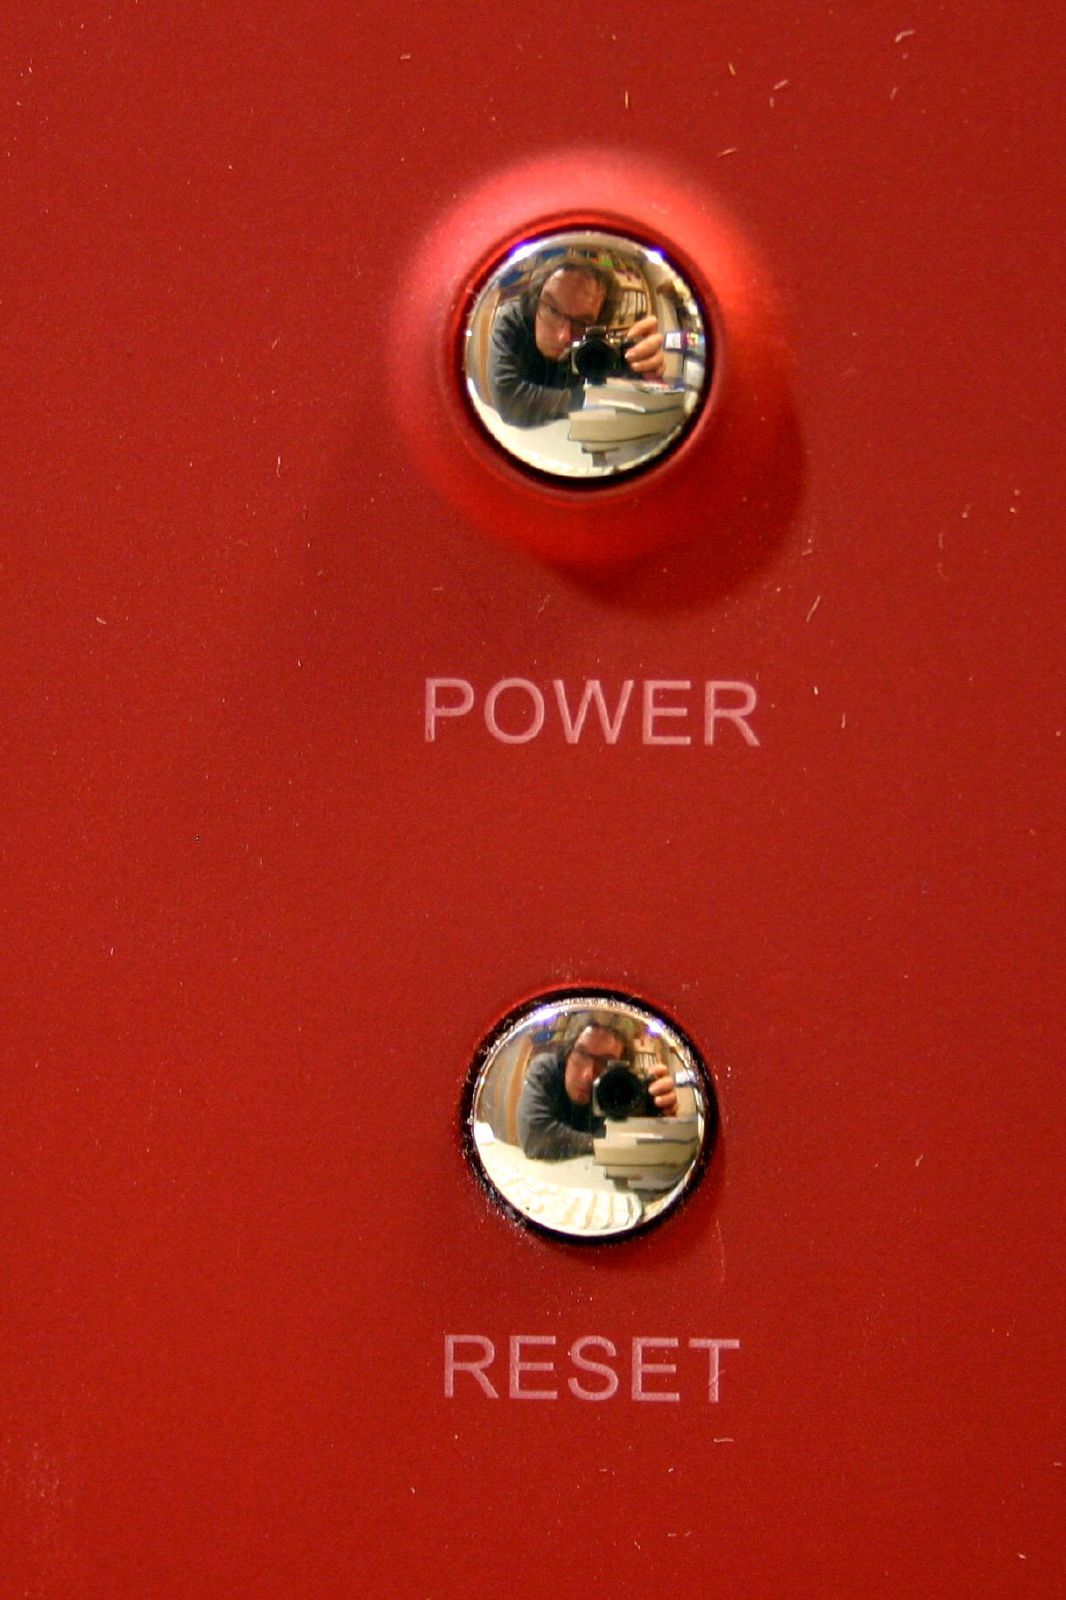 Power Reset buttons